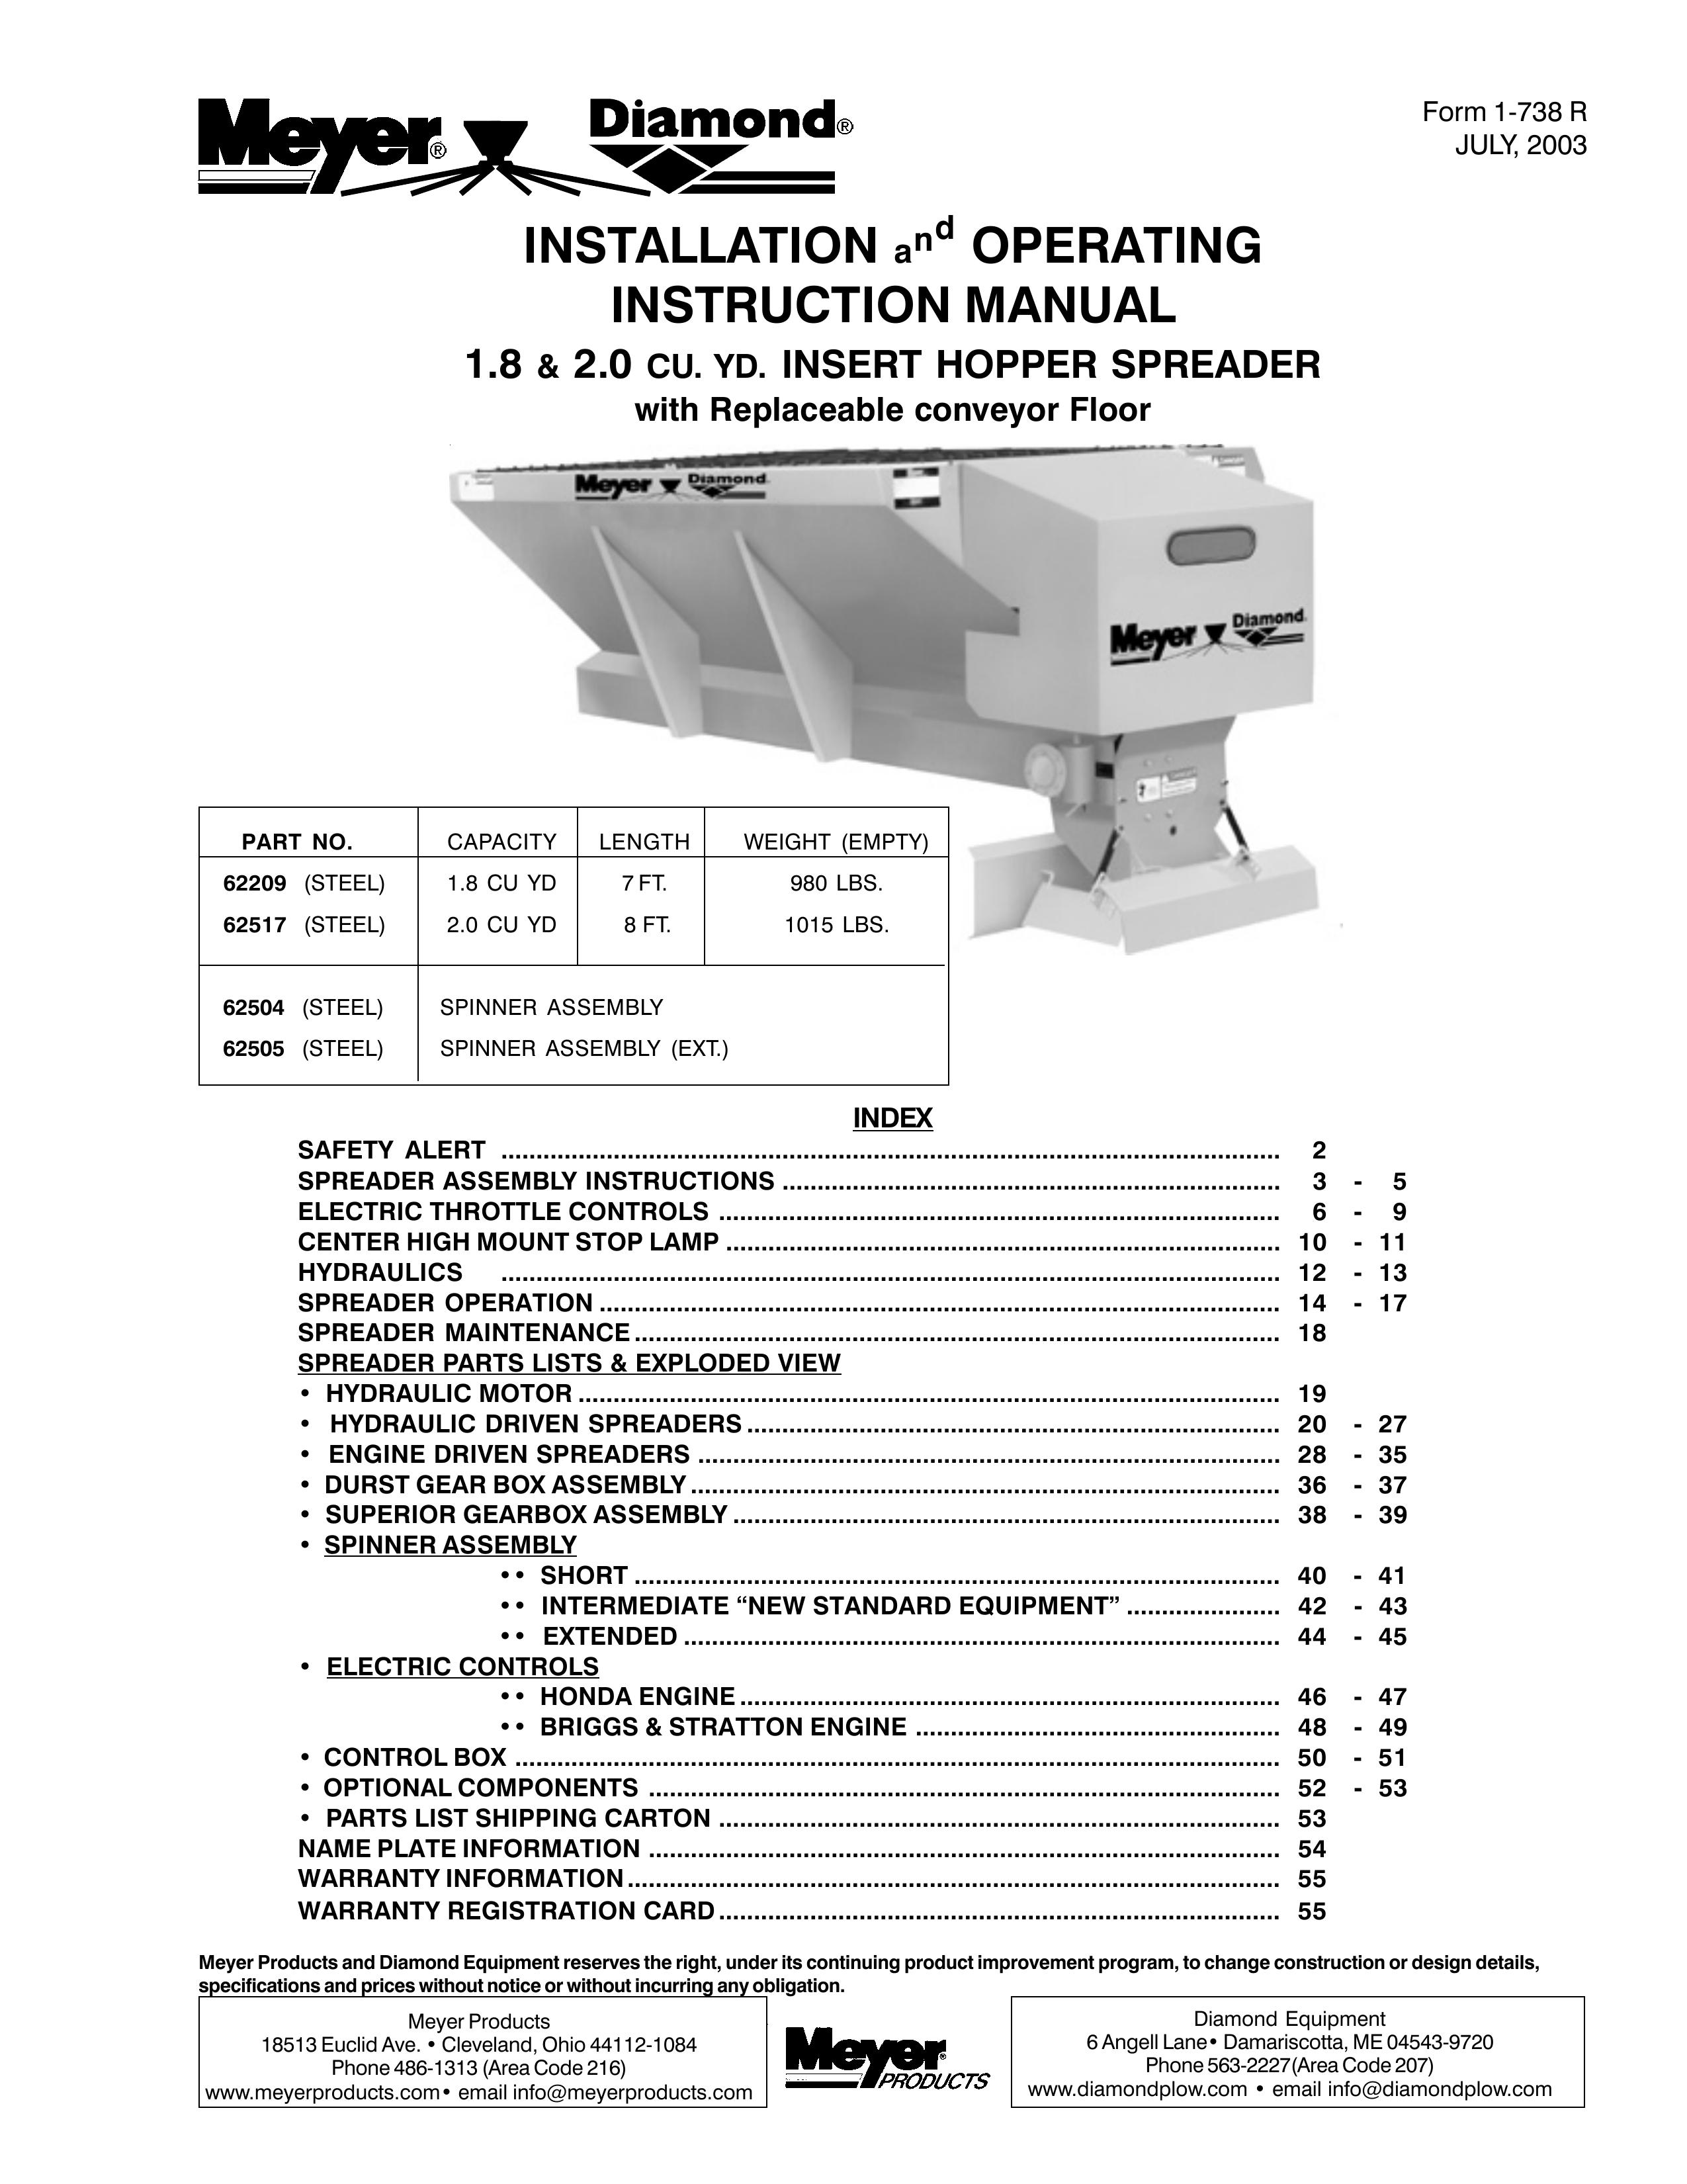 Meyer 62209 Spreader User Manual